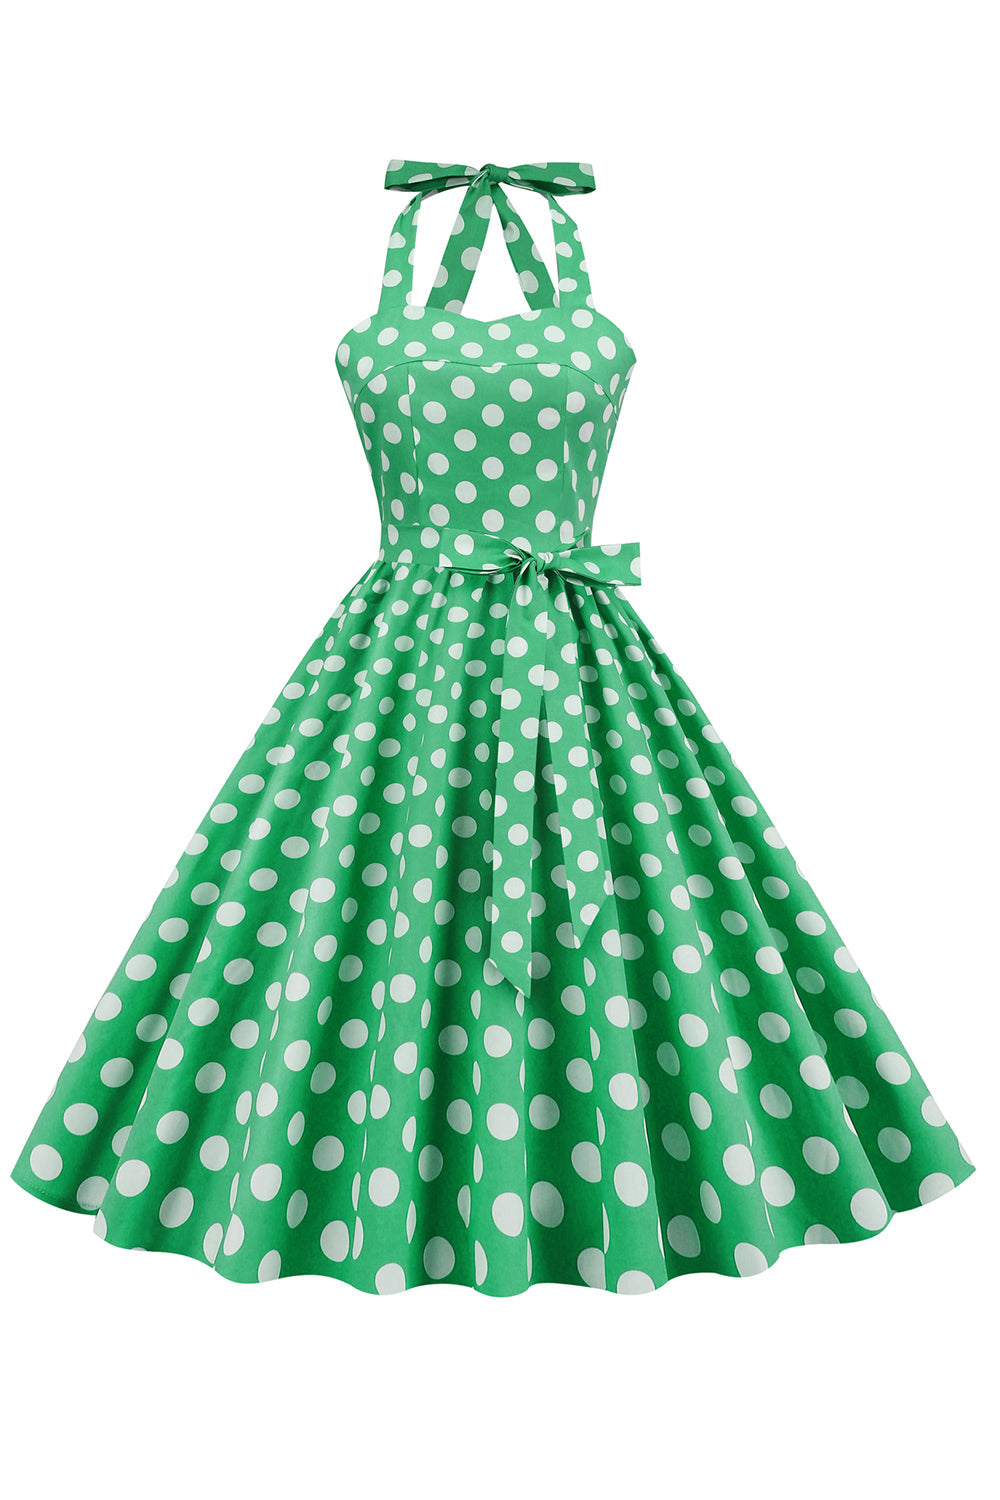 Vestido Pin Up de Lunares Verdes de la década de 1950